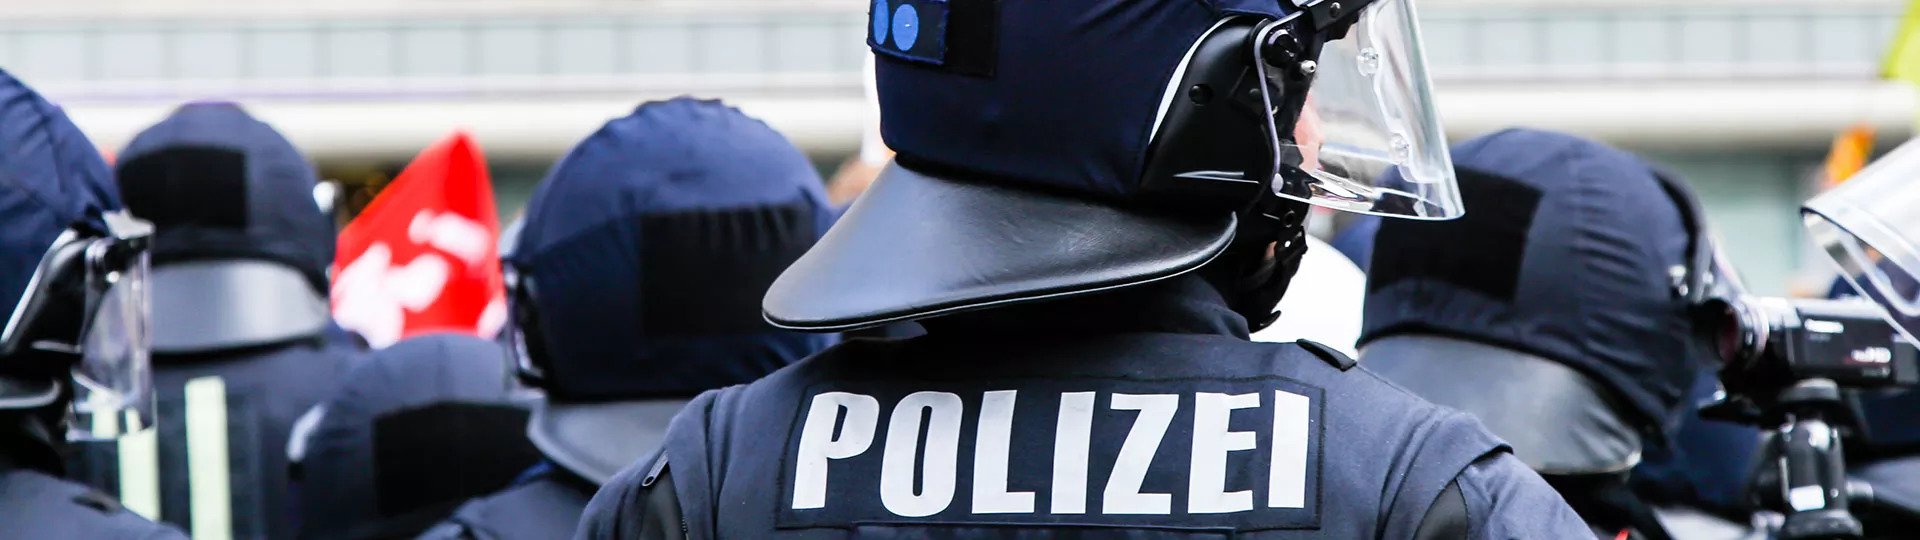 DBV Neubrandenburg Hecht & Schnak oHG | Dienstunfähigkeitsversicherung für Polizisten